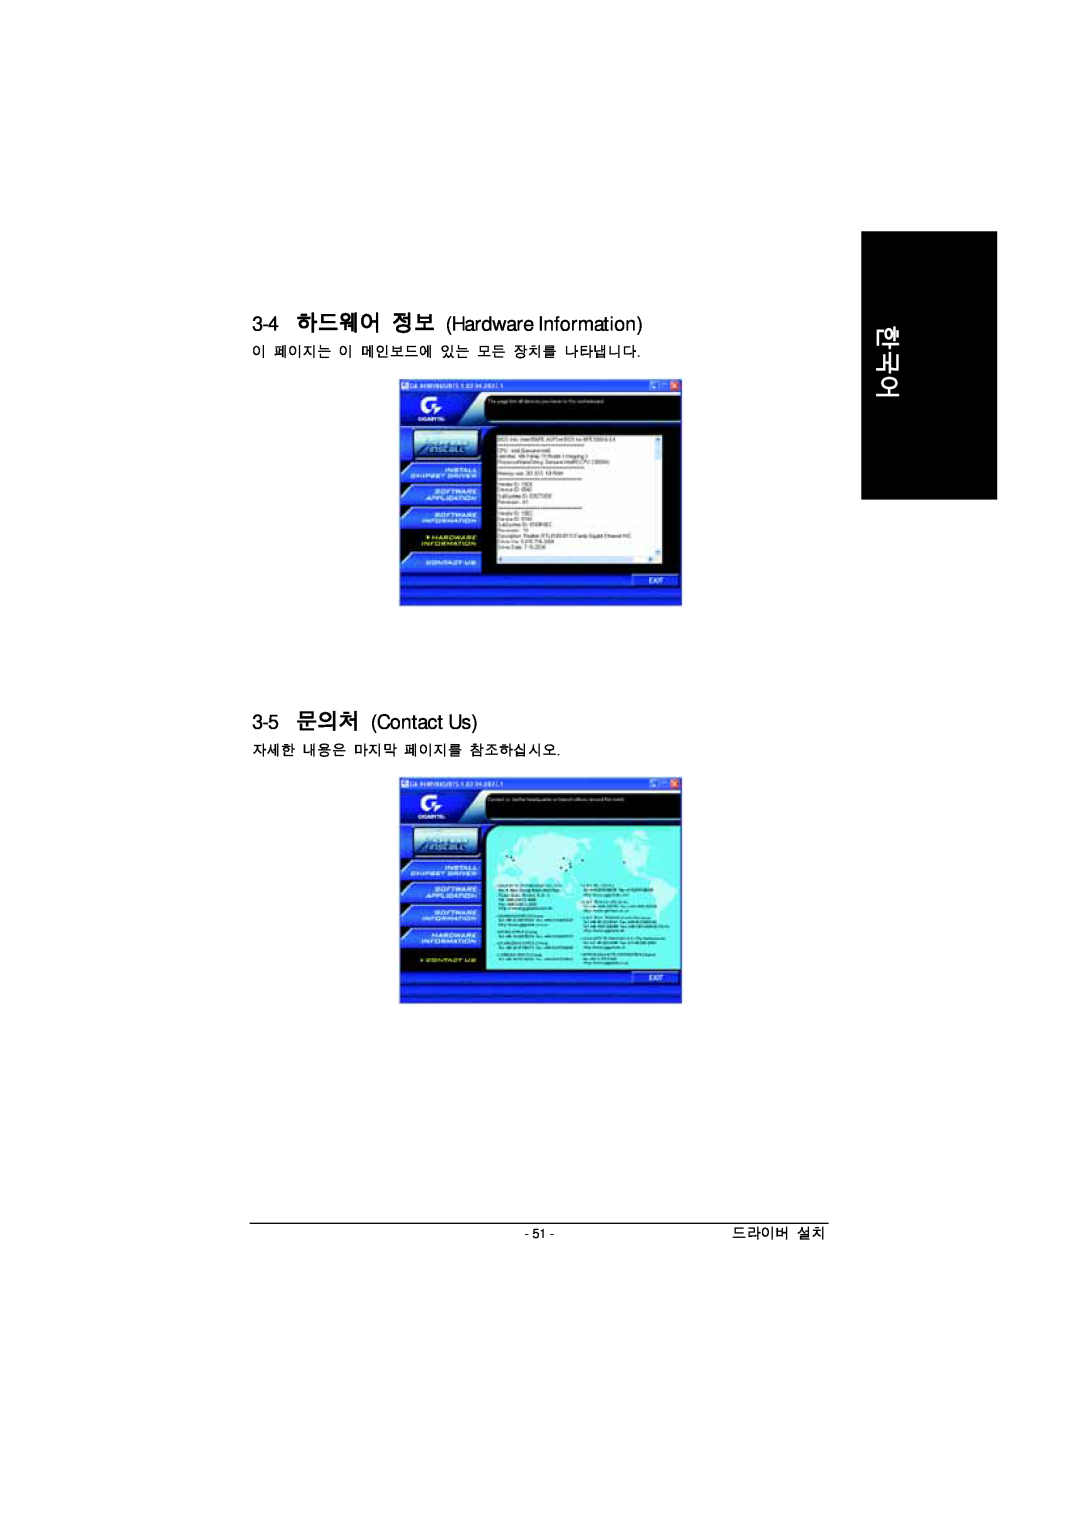 Intel GA-8IPE1000 manual 3-4 하드웨어 정보 Hardware Information, 3-5 문의처 Contact Us 